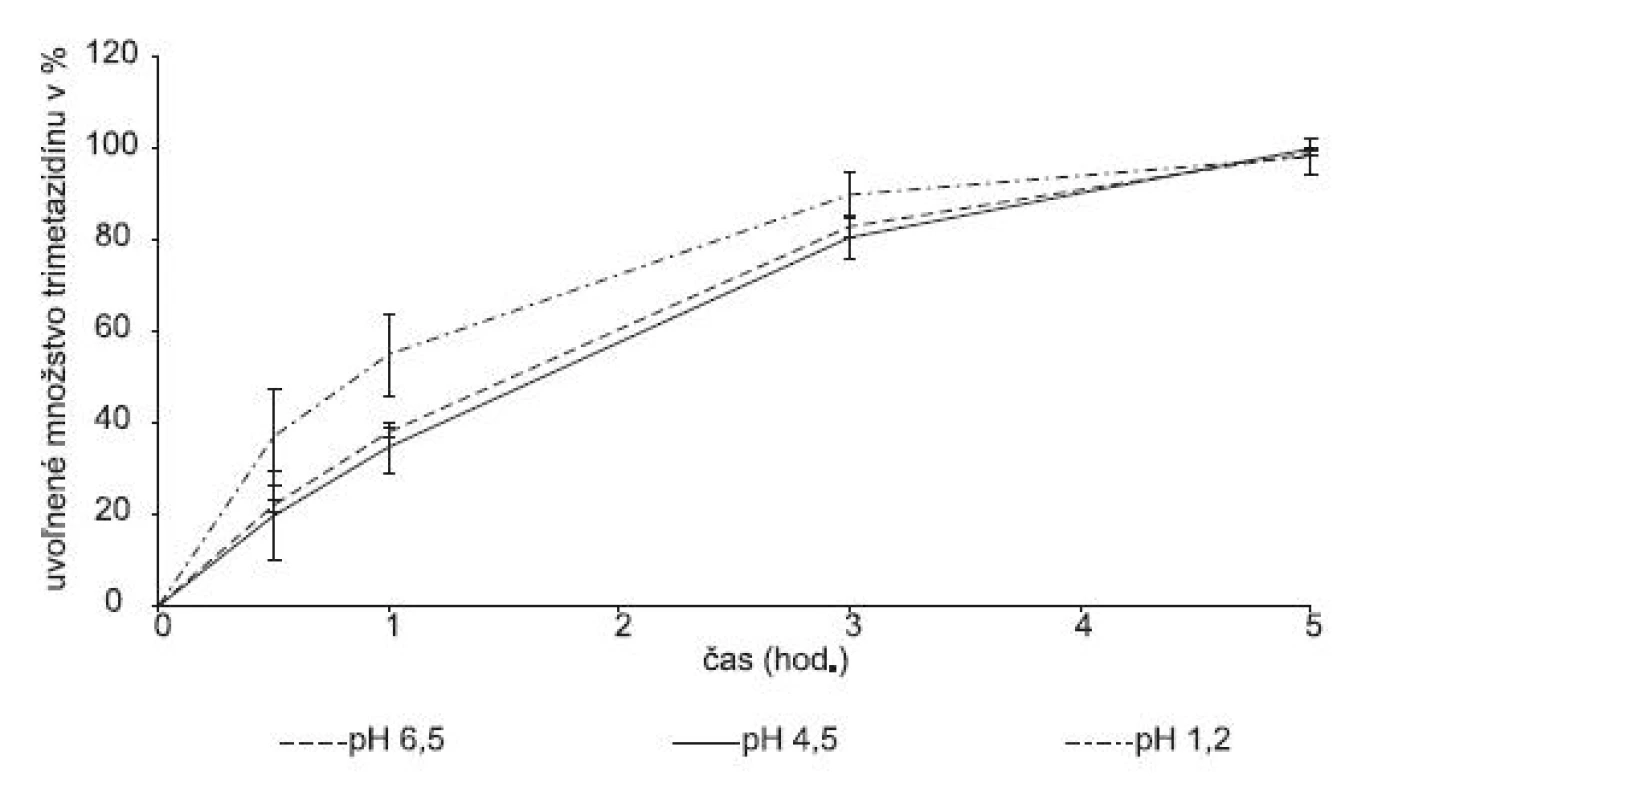 Liberačný profil liečiva z modifikovanej hydrofilnej matricovej tablety obsahujúcej Gelcarin® GP 379 NF v závislosti od pH disolučného média